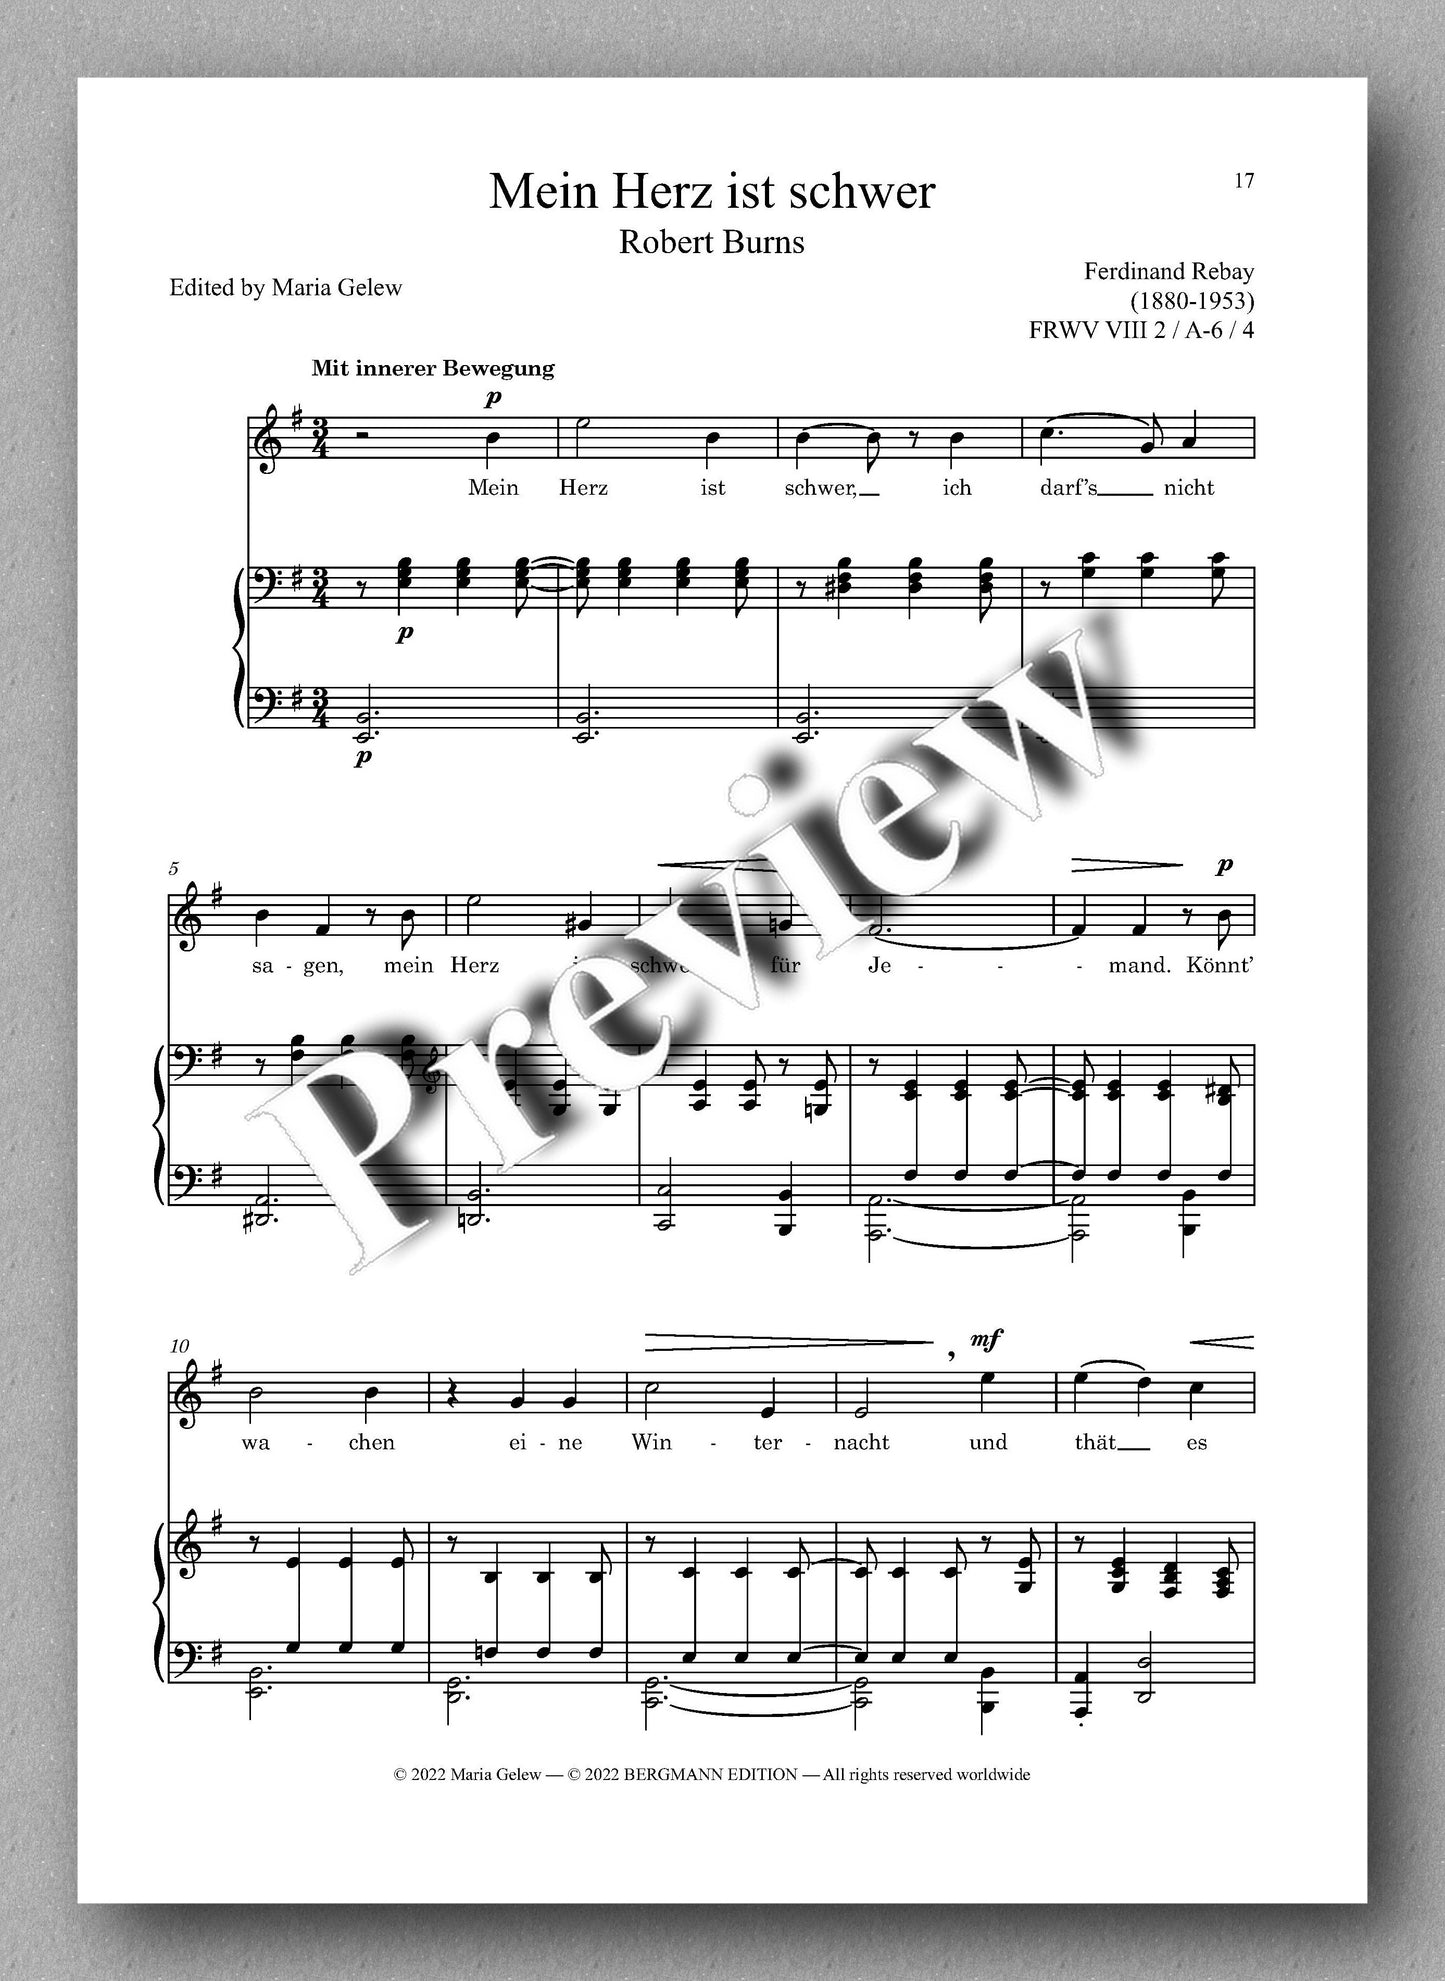 Ferdinand Rebay, Lieder nach Gedichten von Robert Burns (1759-1796) - preview of the music score 2